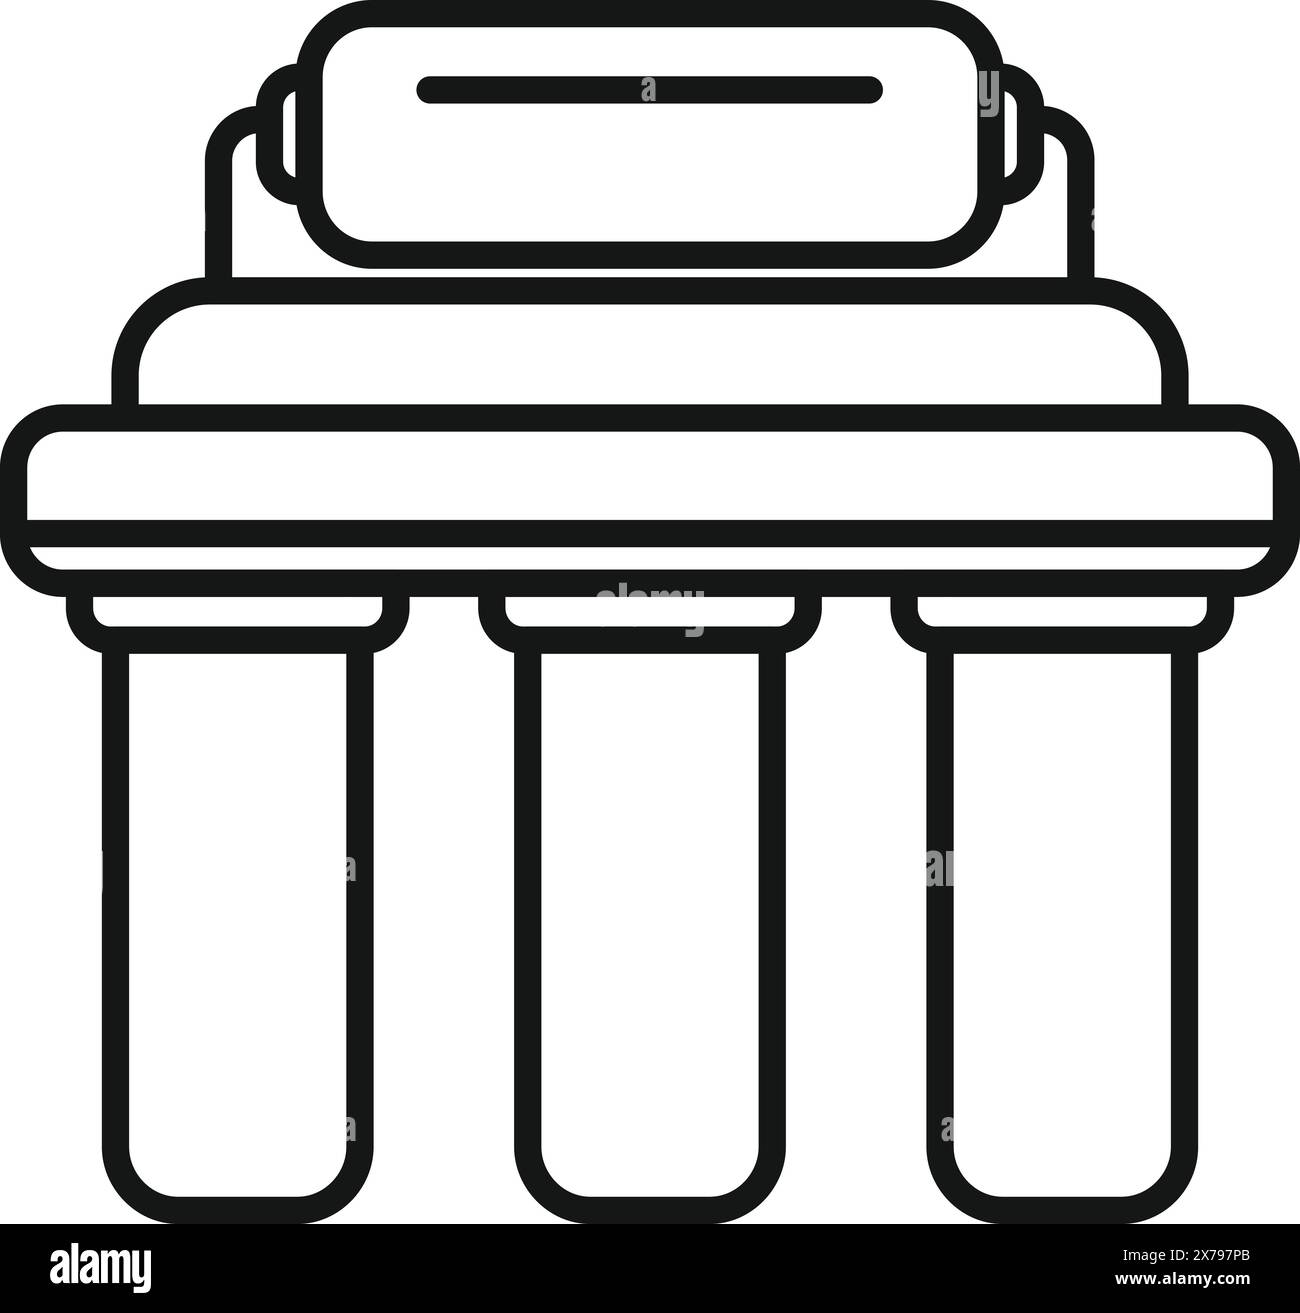 Illustrazione vettoriale di un'icona semplificata raffigurante colonne architettoniche classiche greche o romane Illustrazione Vettoriale